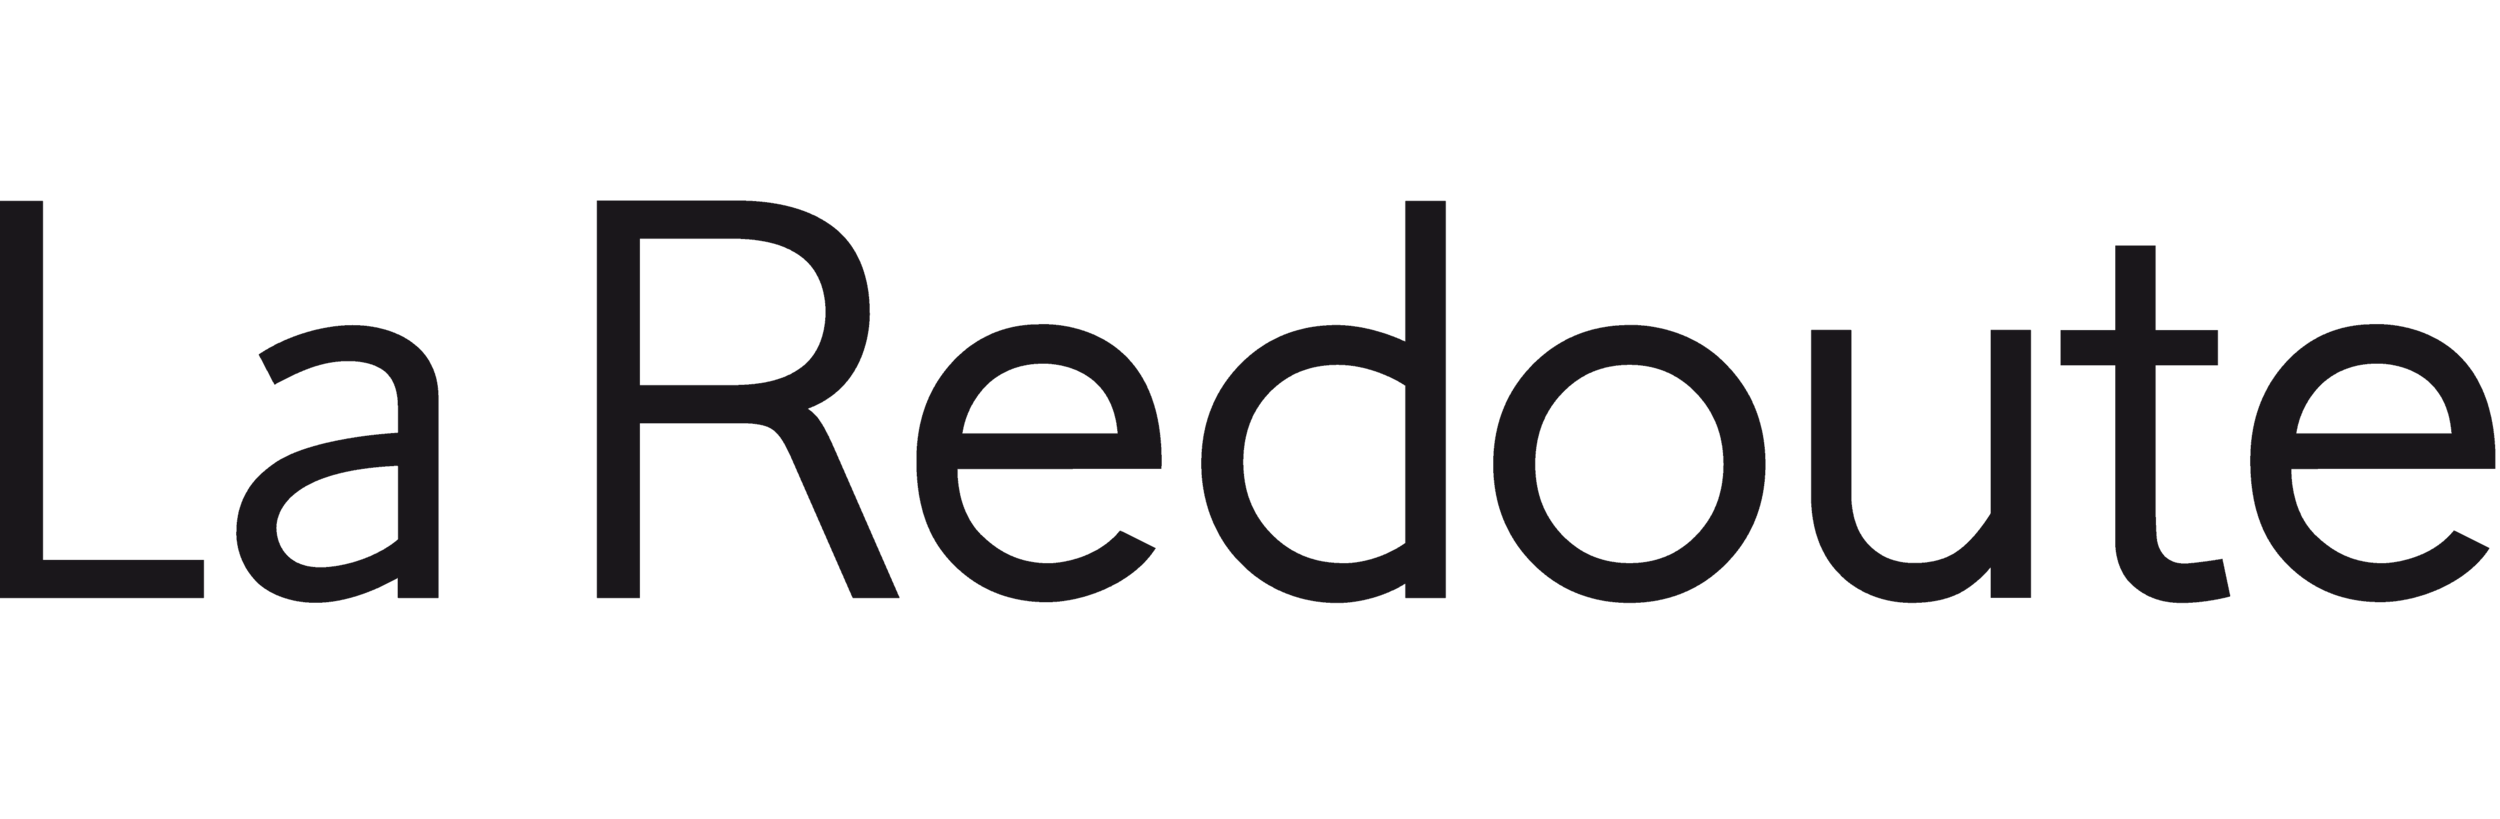 La-Redoute-logo.png